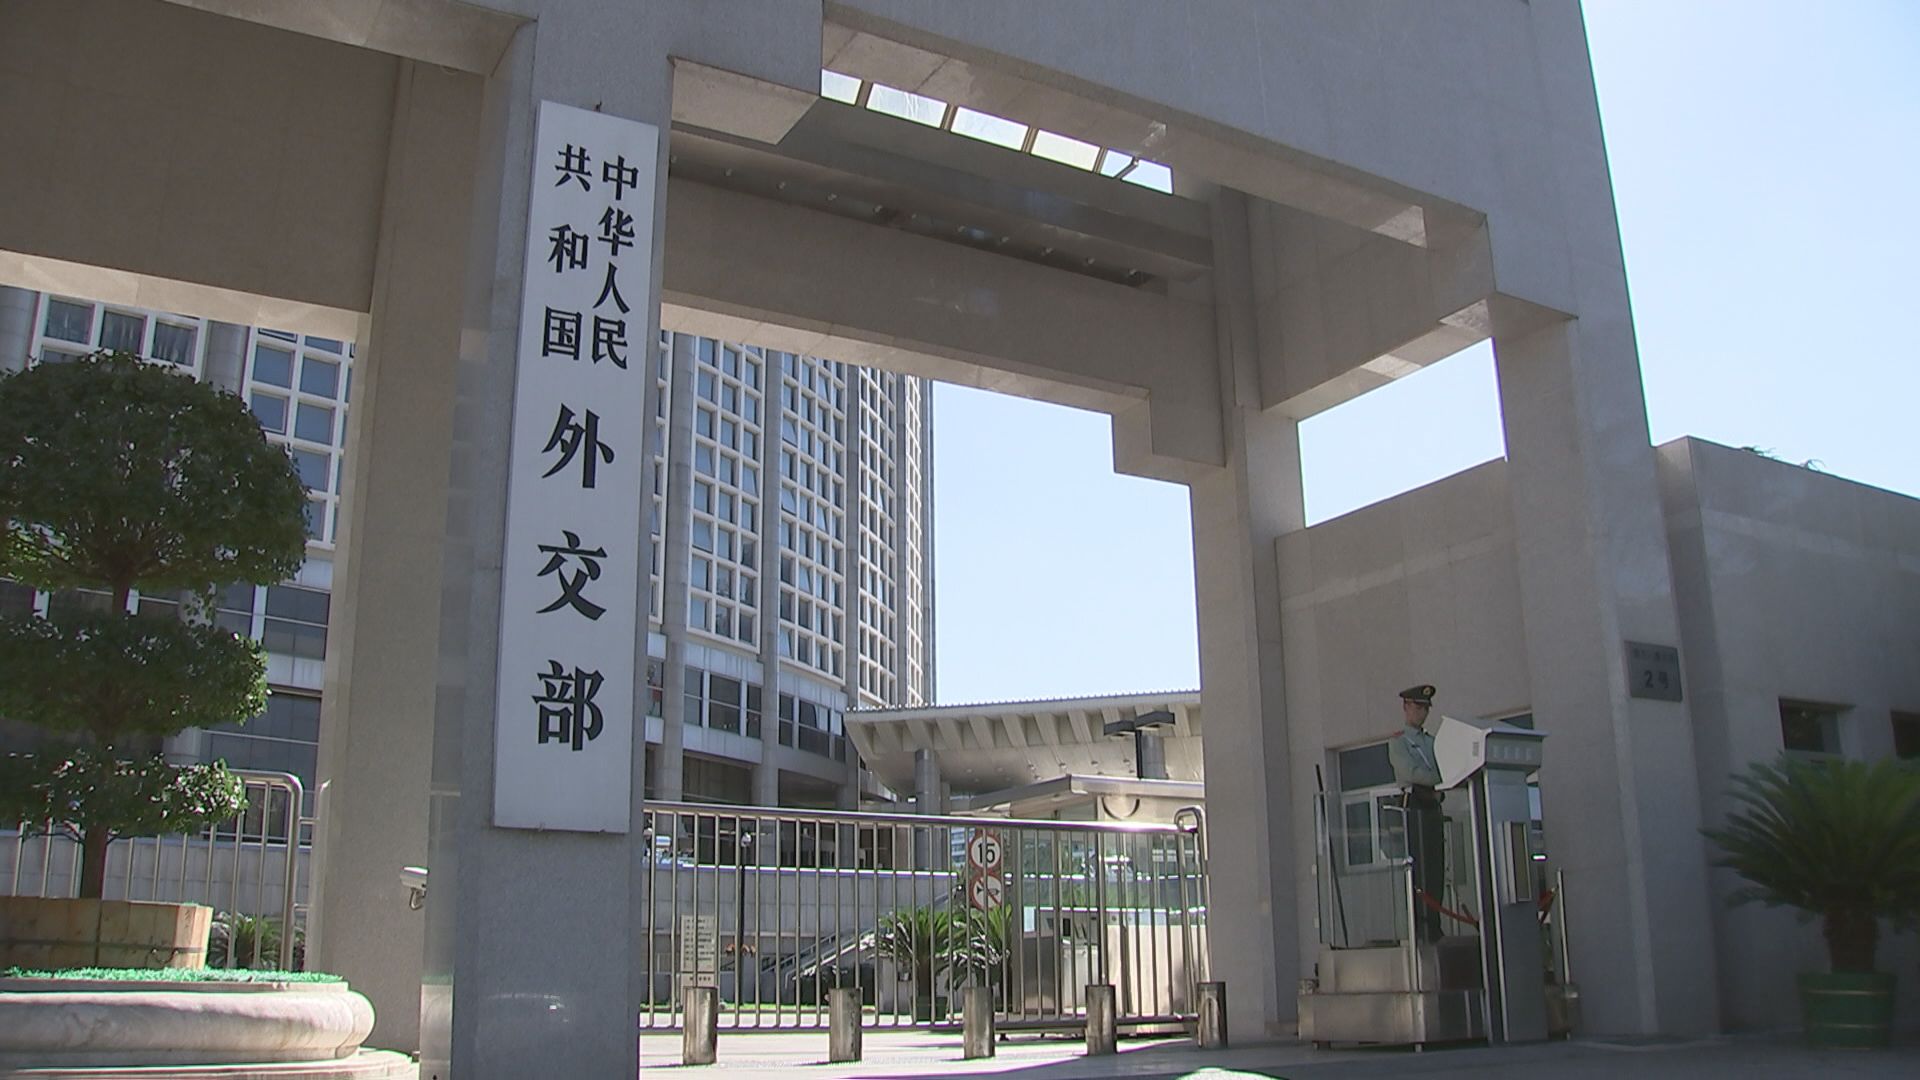 日米2プラス2、クアッド受け中国外務省が日本大使館次席を呼び出し「強烈な不満」表明